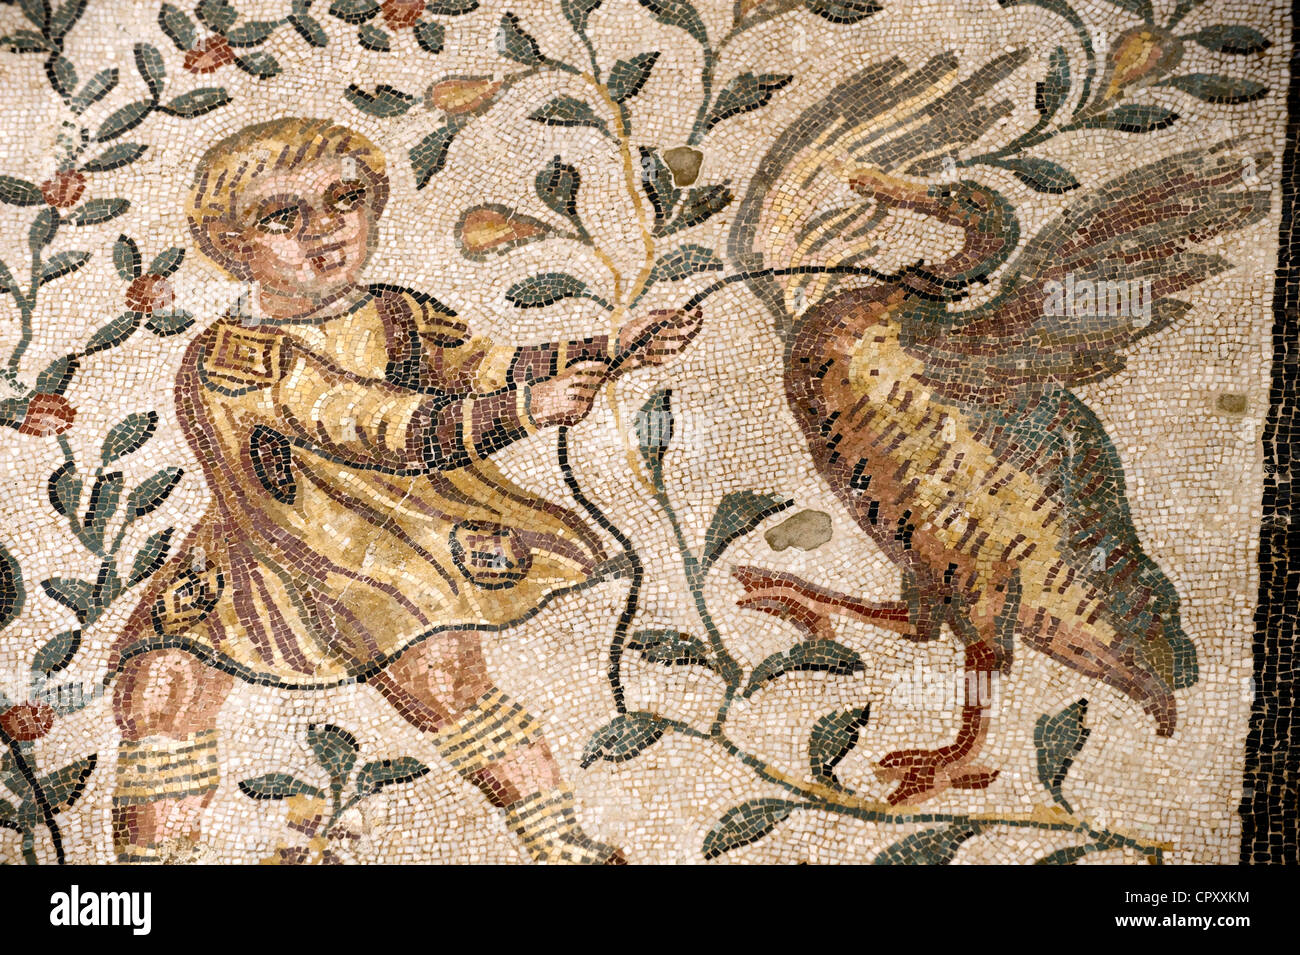 Italy, Sicily, Piazza Armerina, Roman mosaics in the Villa Del Casale Stock Photo